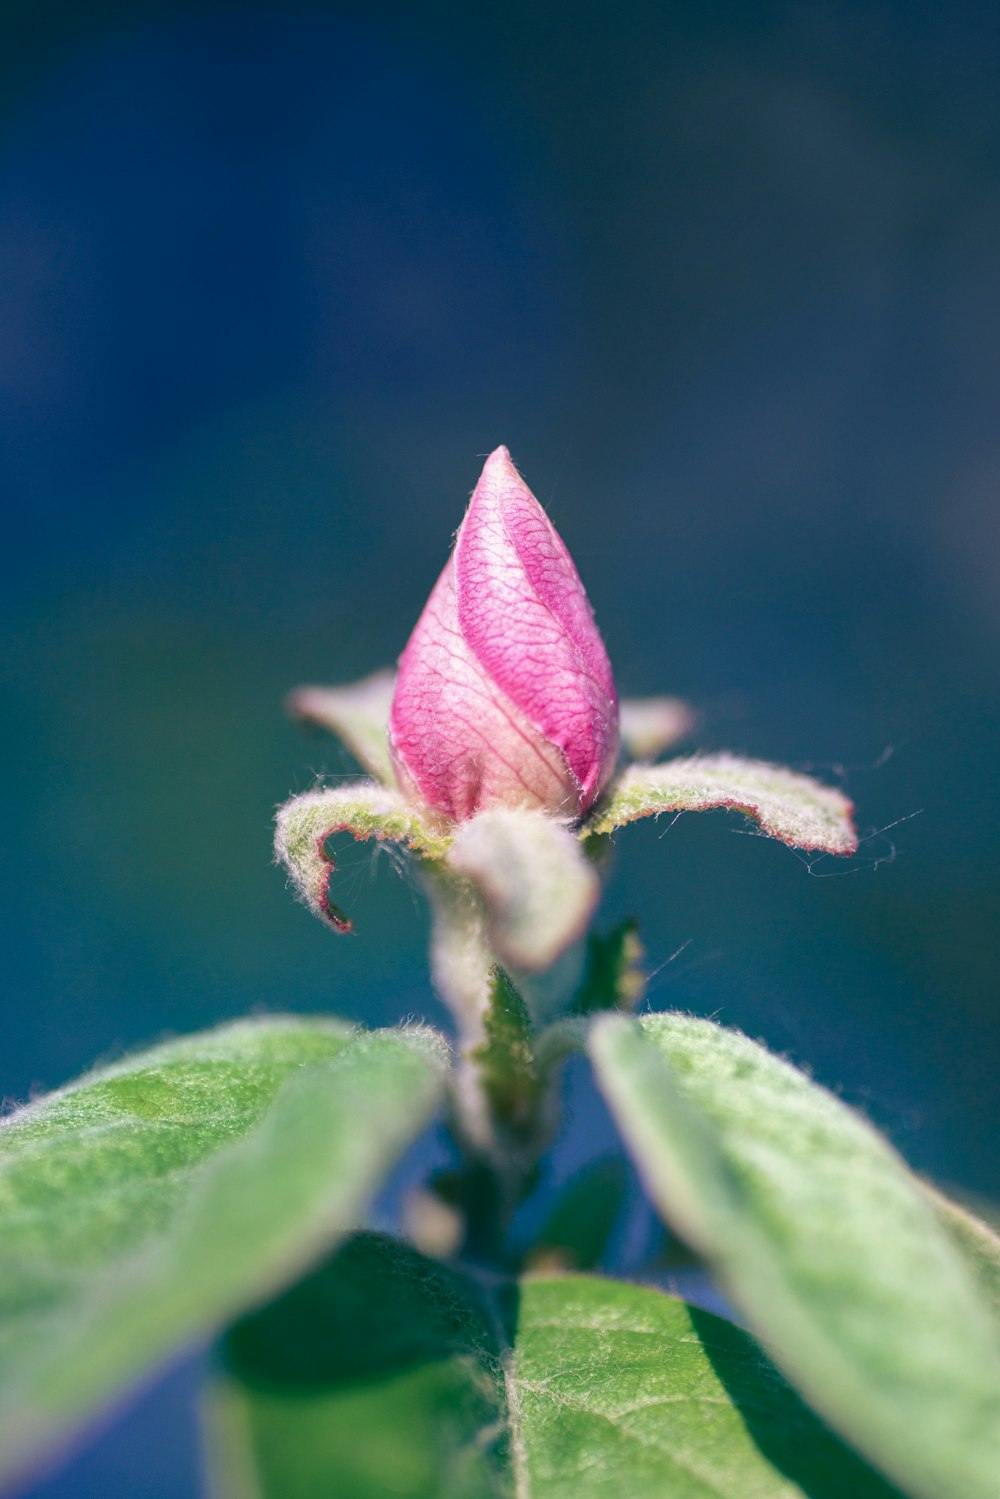 capullo de flor rosa en lente de cambio de inclinación